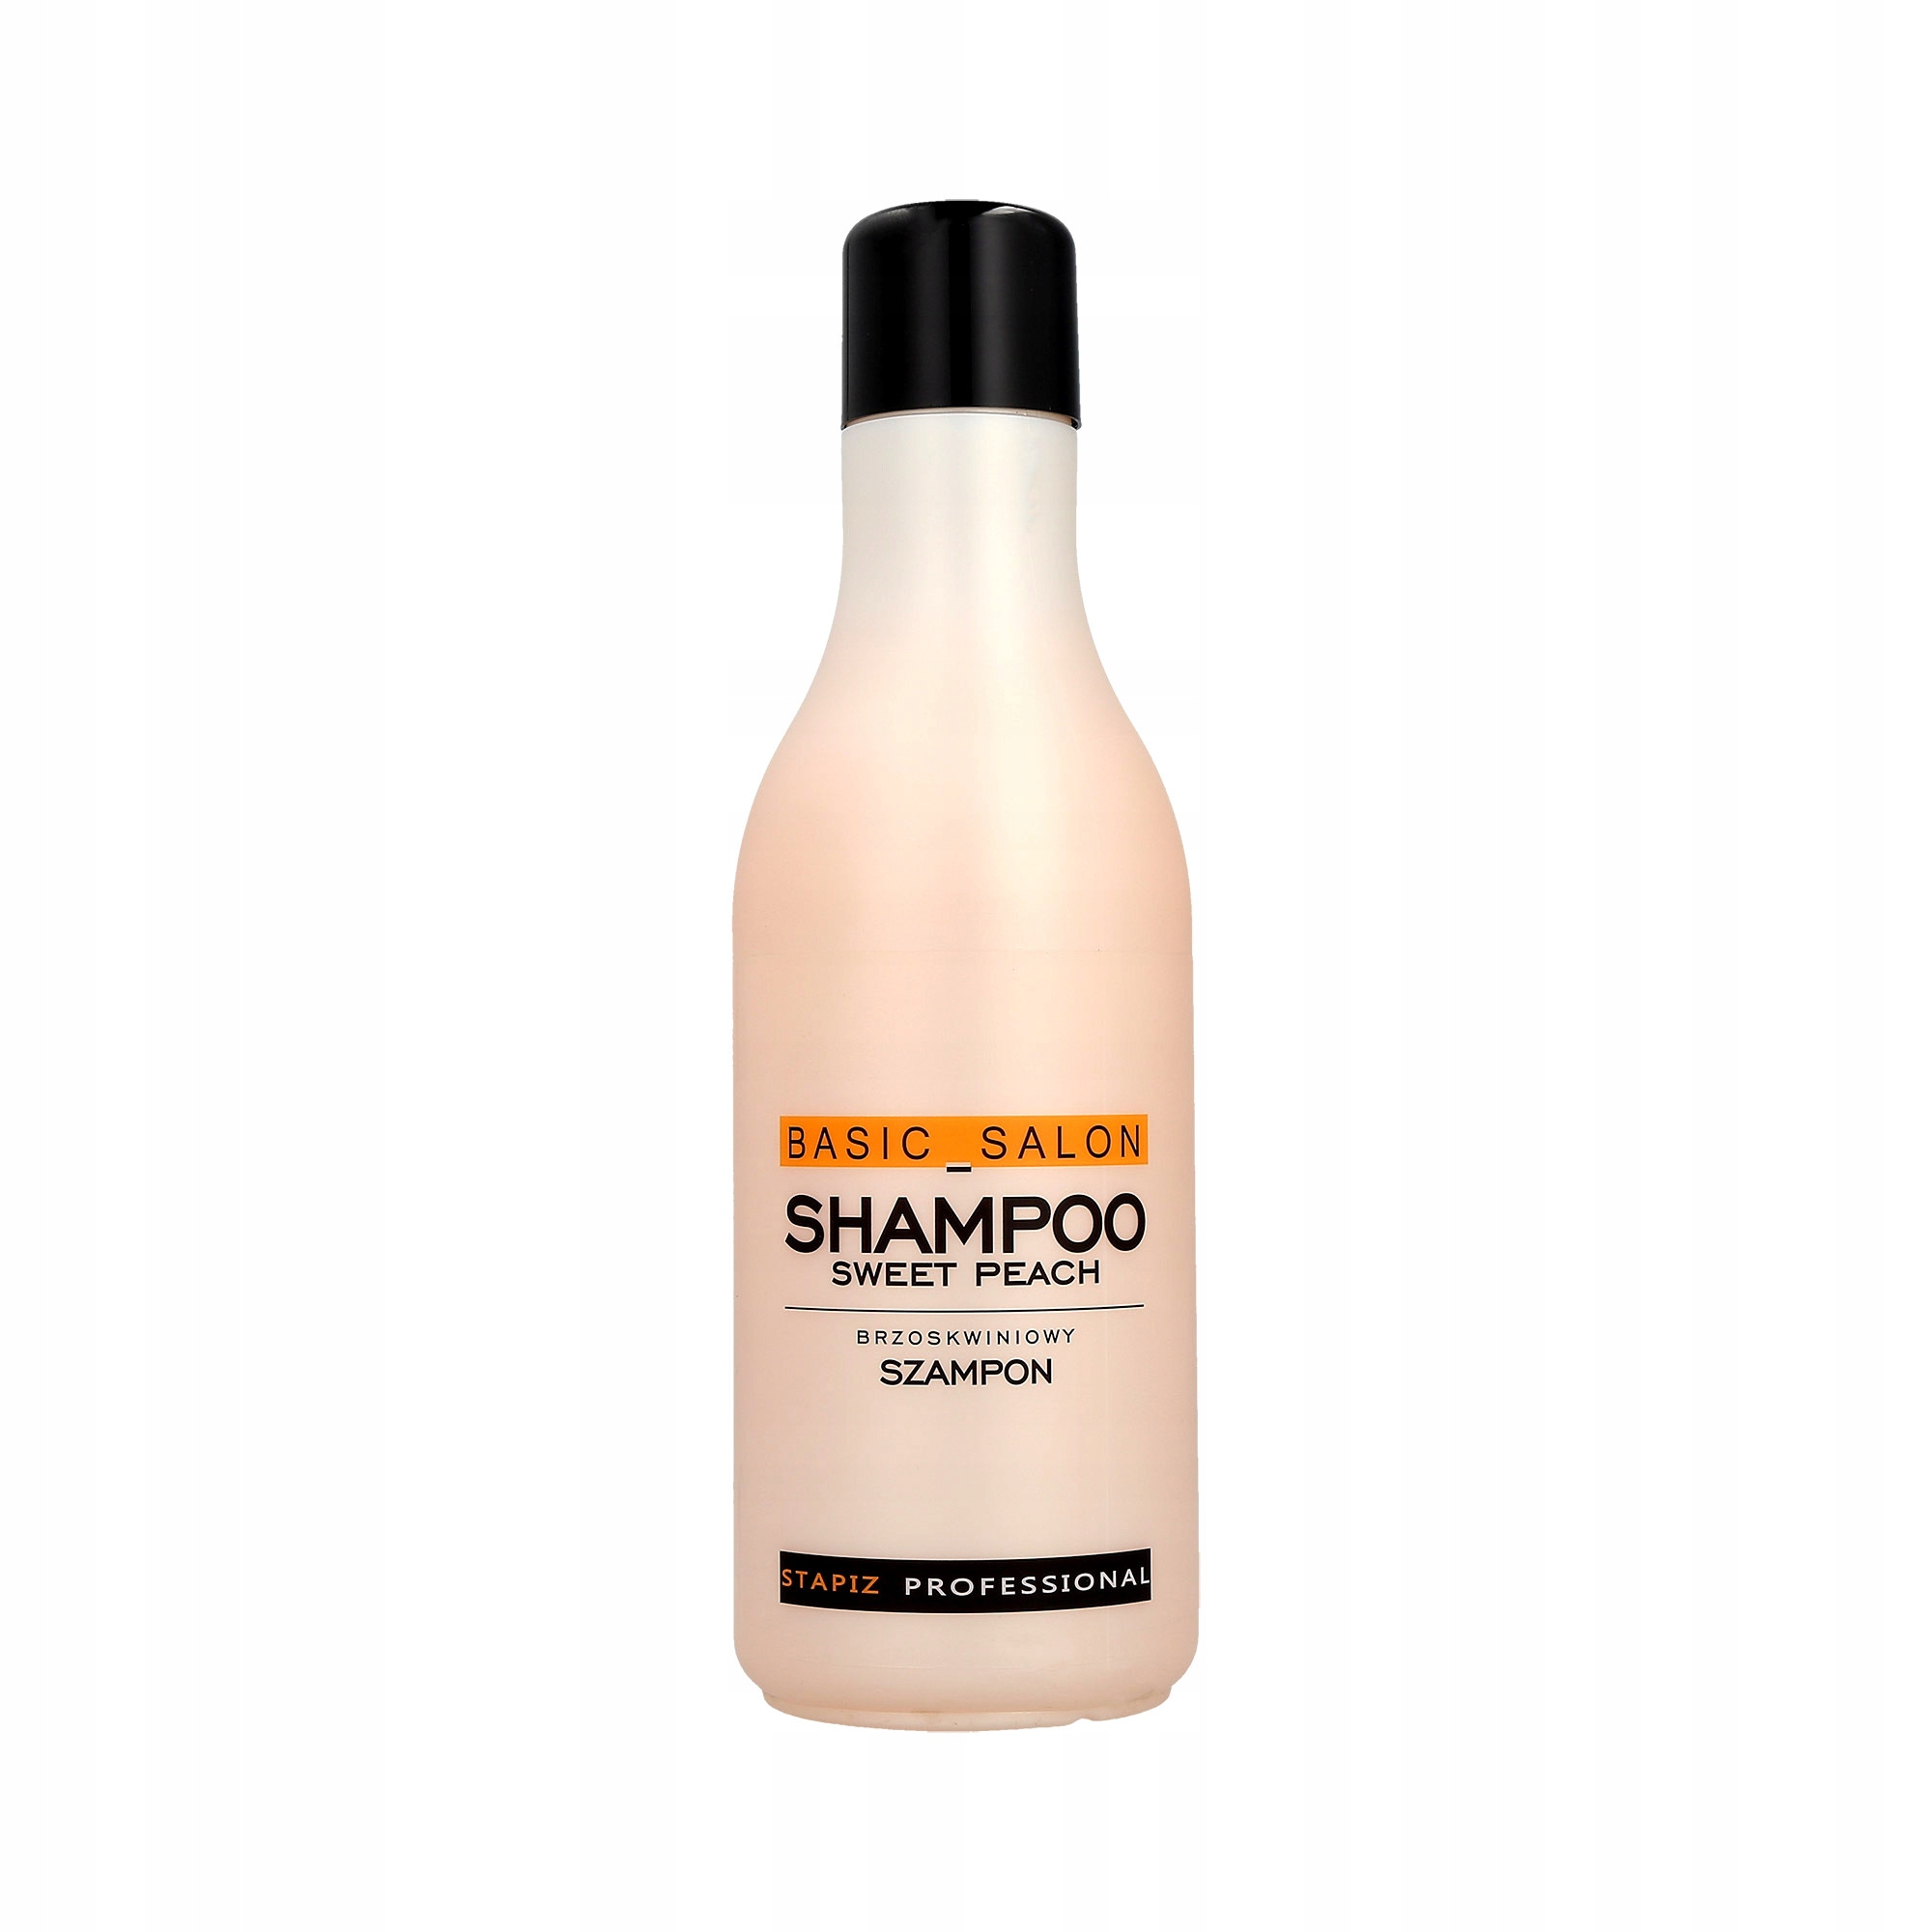 stapiz basic szampon do włosów brzoskwinia 1000 ml